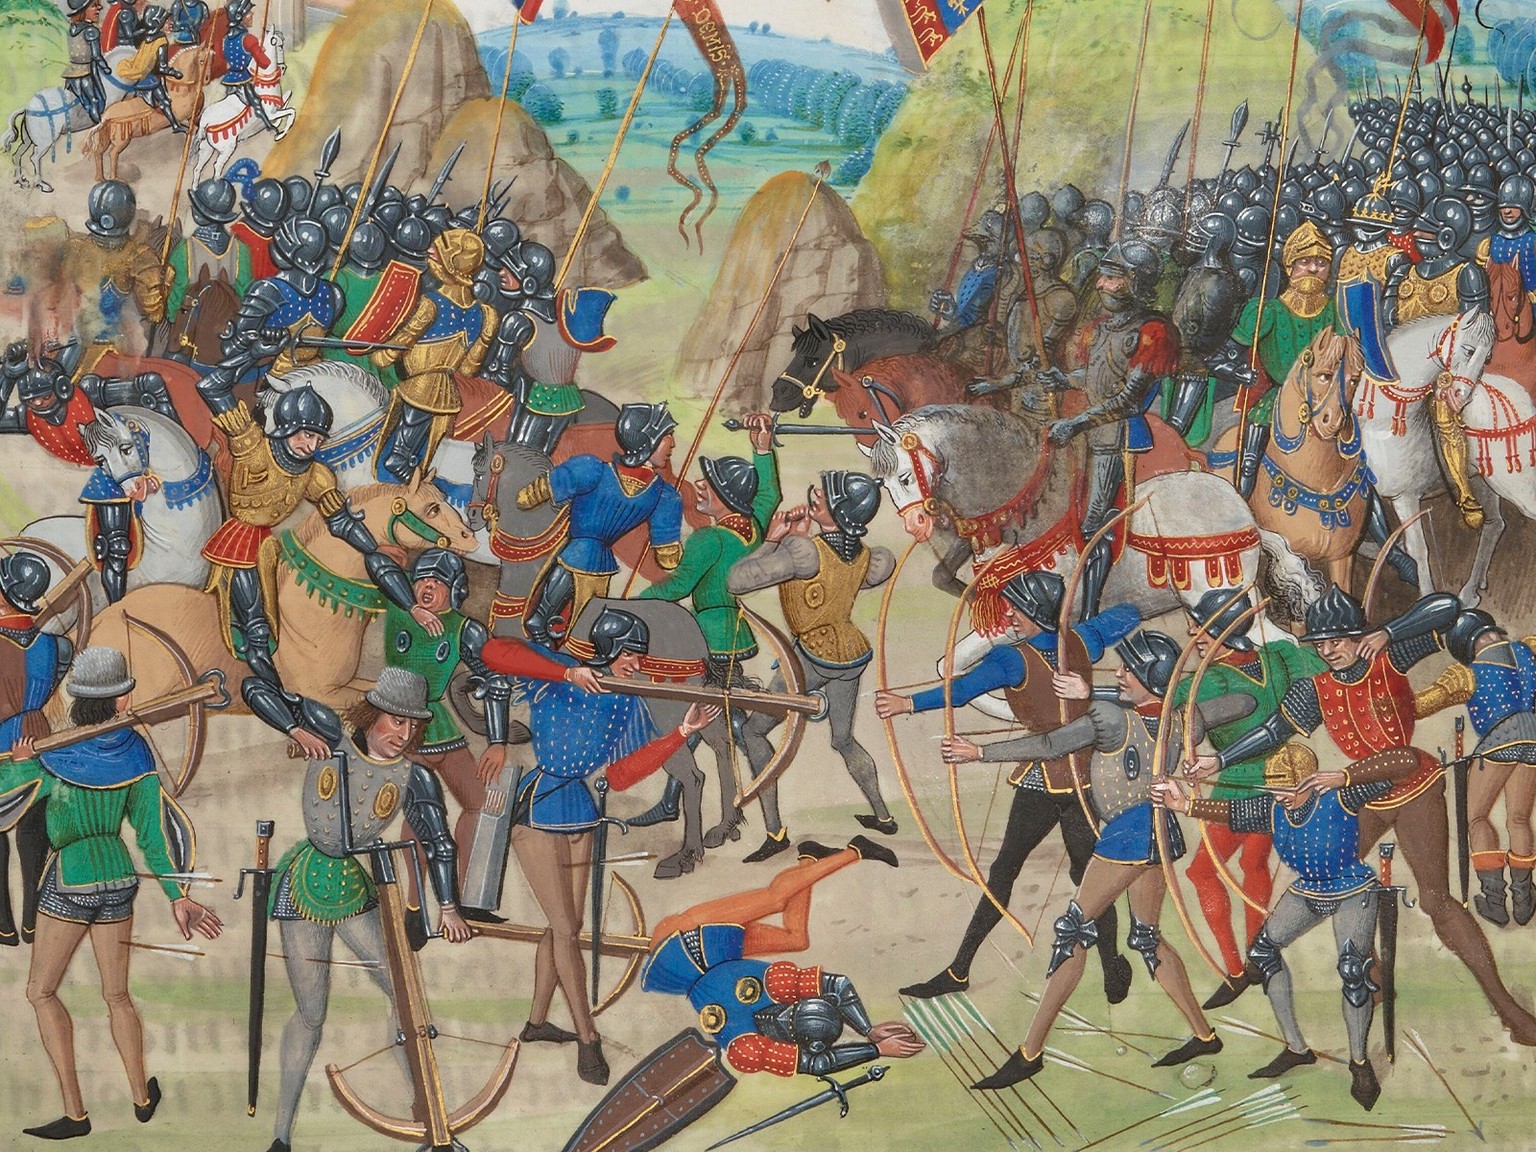 Arbalétriers dans la bataille de Crécy (1346), illustration tirée des Chroniques de Jean Froissart (1337–1405).
https://gallica.bnf.fr/ark:/12148/btv1b84386043/f354.item.r=FR%202643.zoom